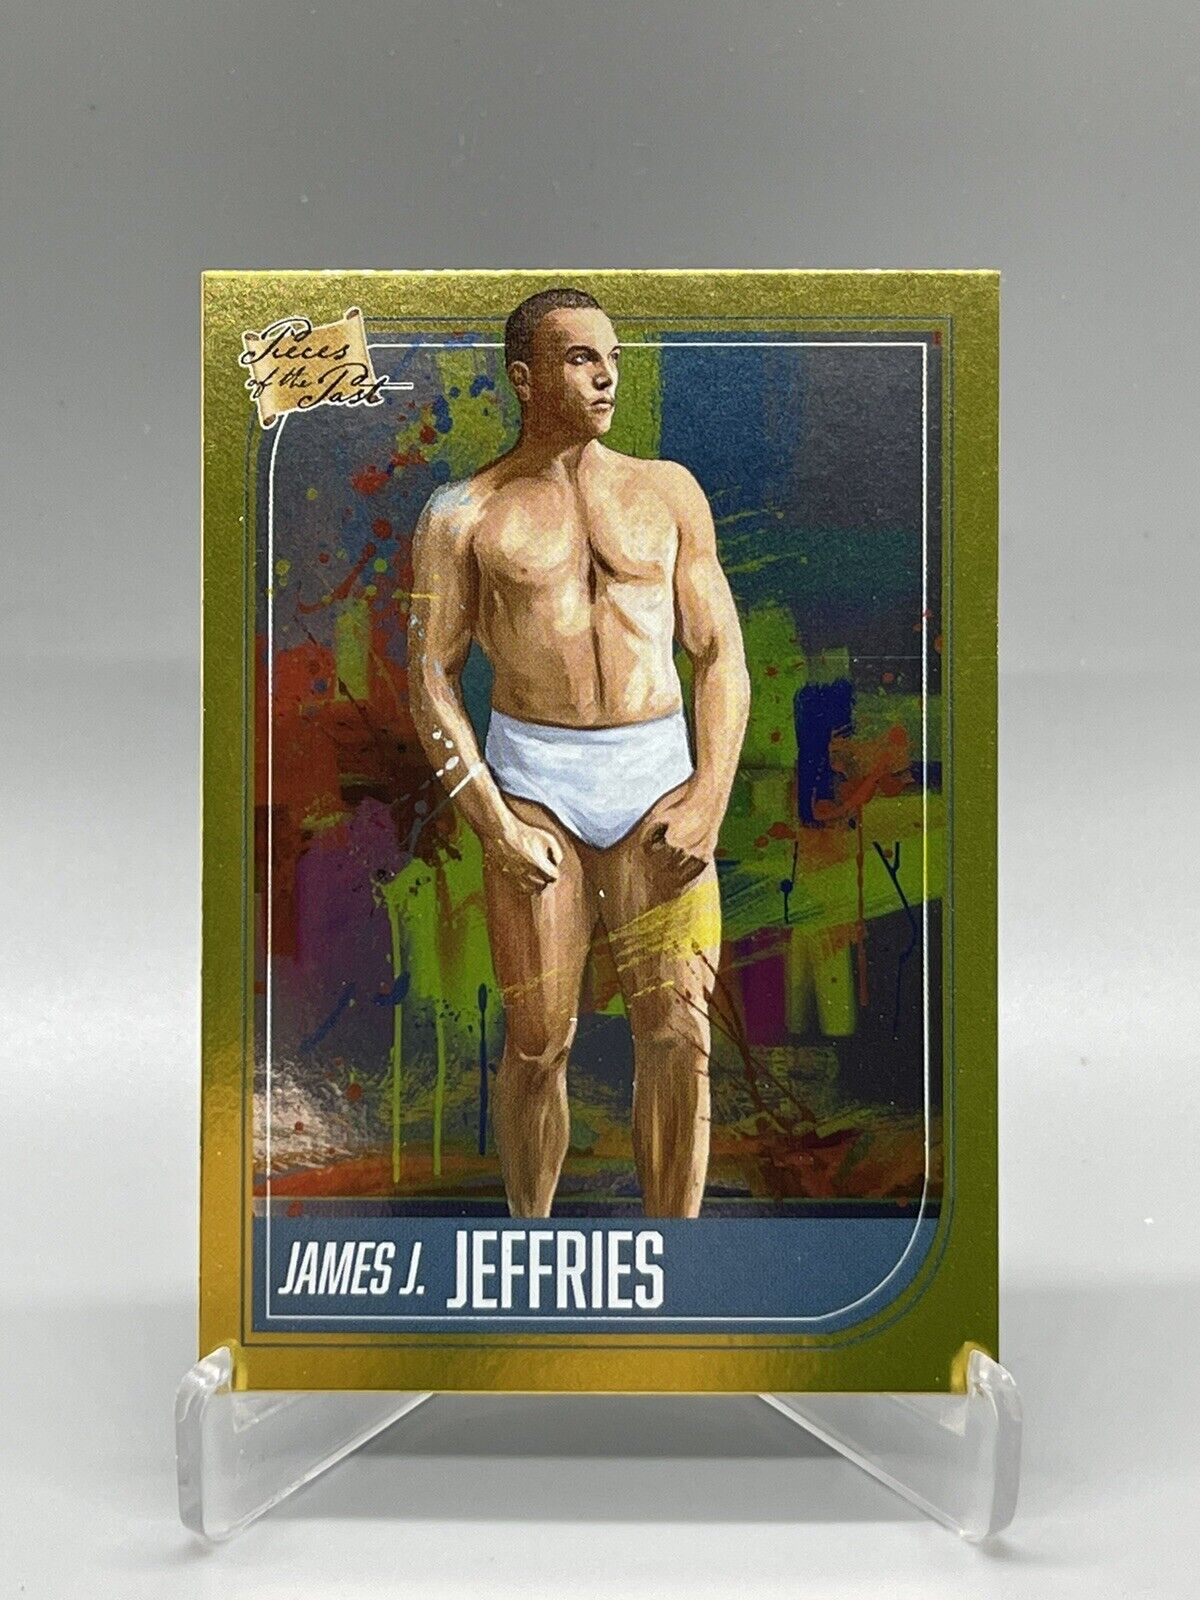 2021 Pieces Of The Past Boxer James J. Jeffries Gold Foil Partial Parallel